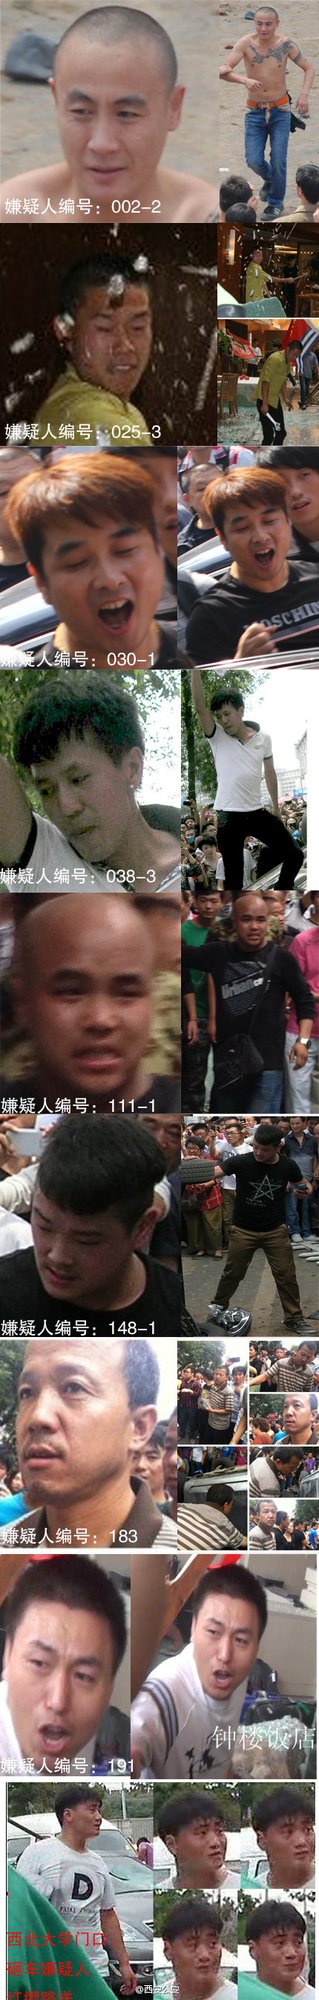 西安警方公布9名打砸嫌疑人照片 敦促自首(图)